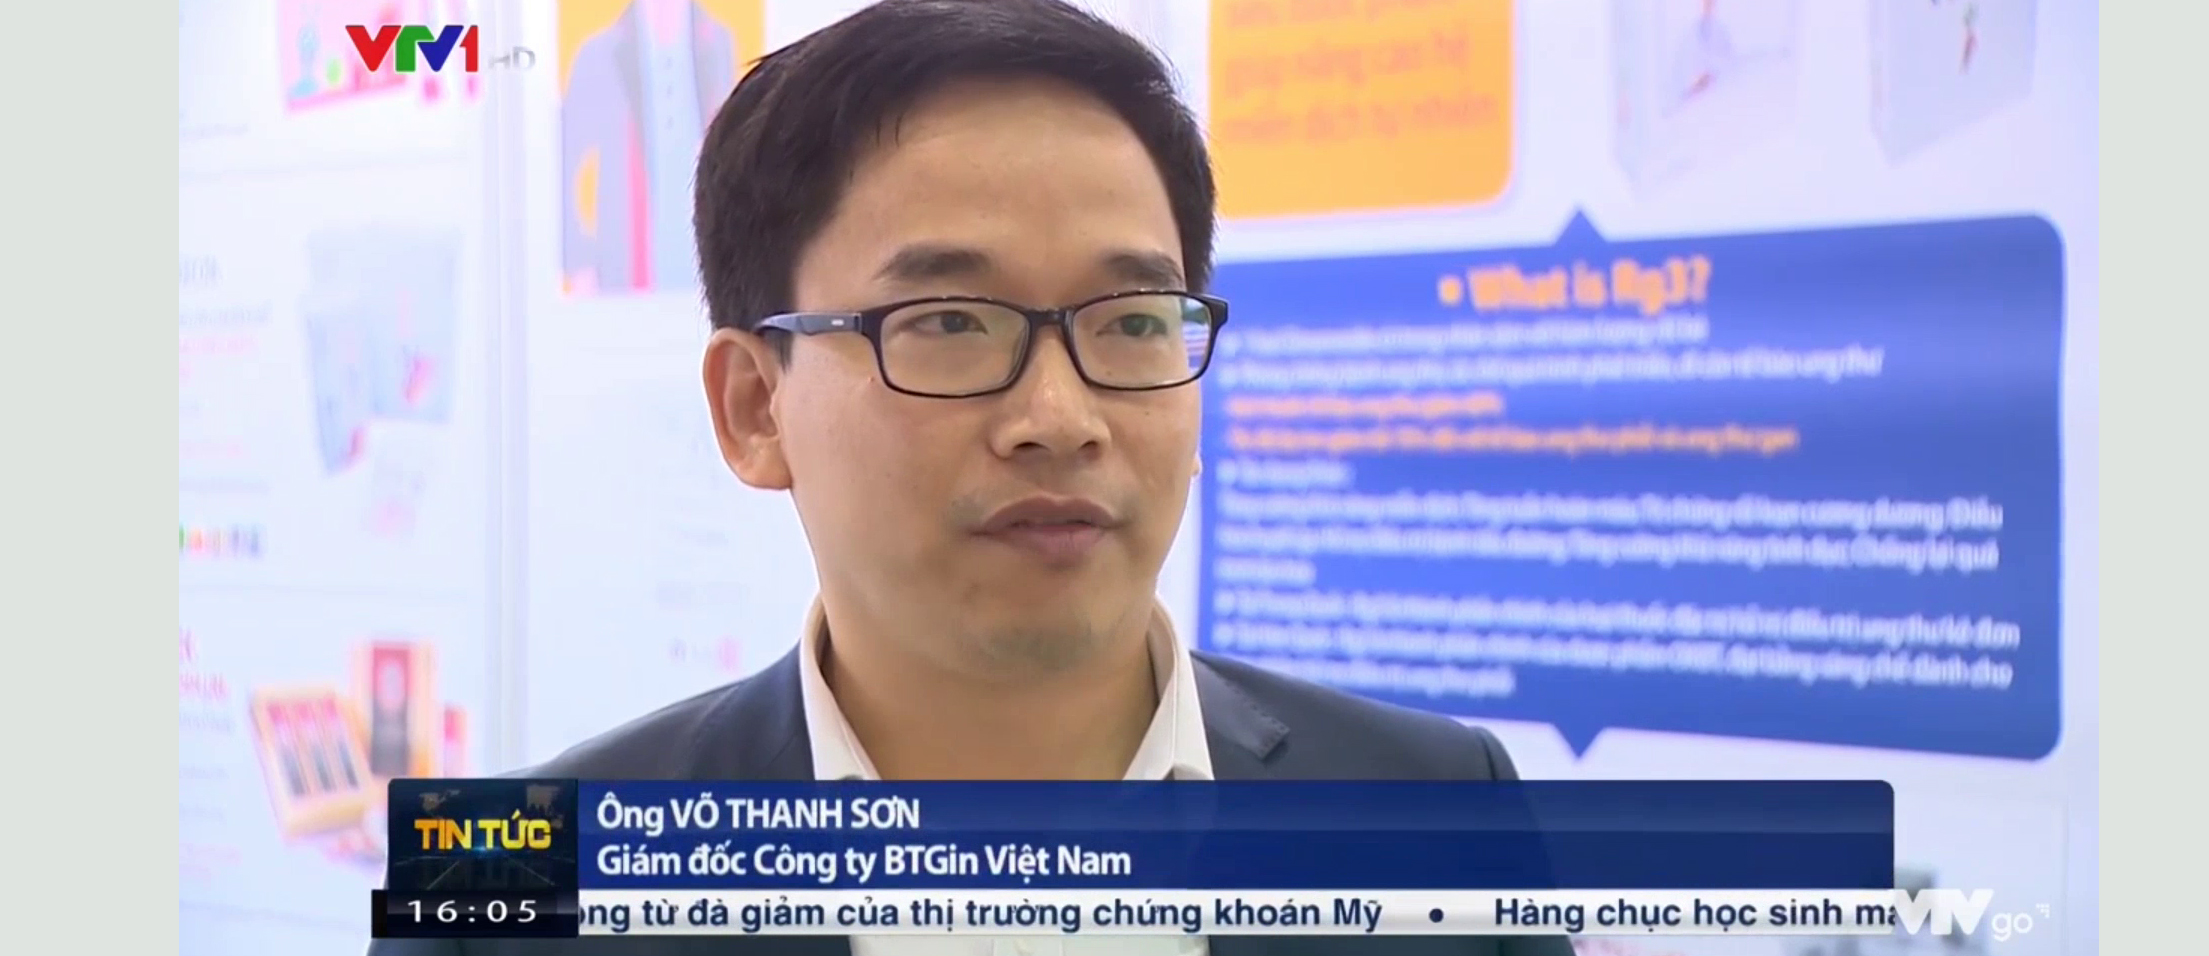 Hồng sâm BTGin Việt Nam tham gia Triển lãm Quốc tế chuyên ngành Y Dược lần 26 tại Hà Nội